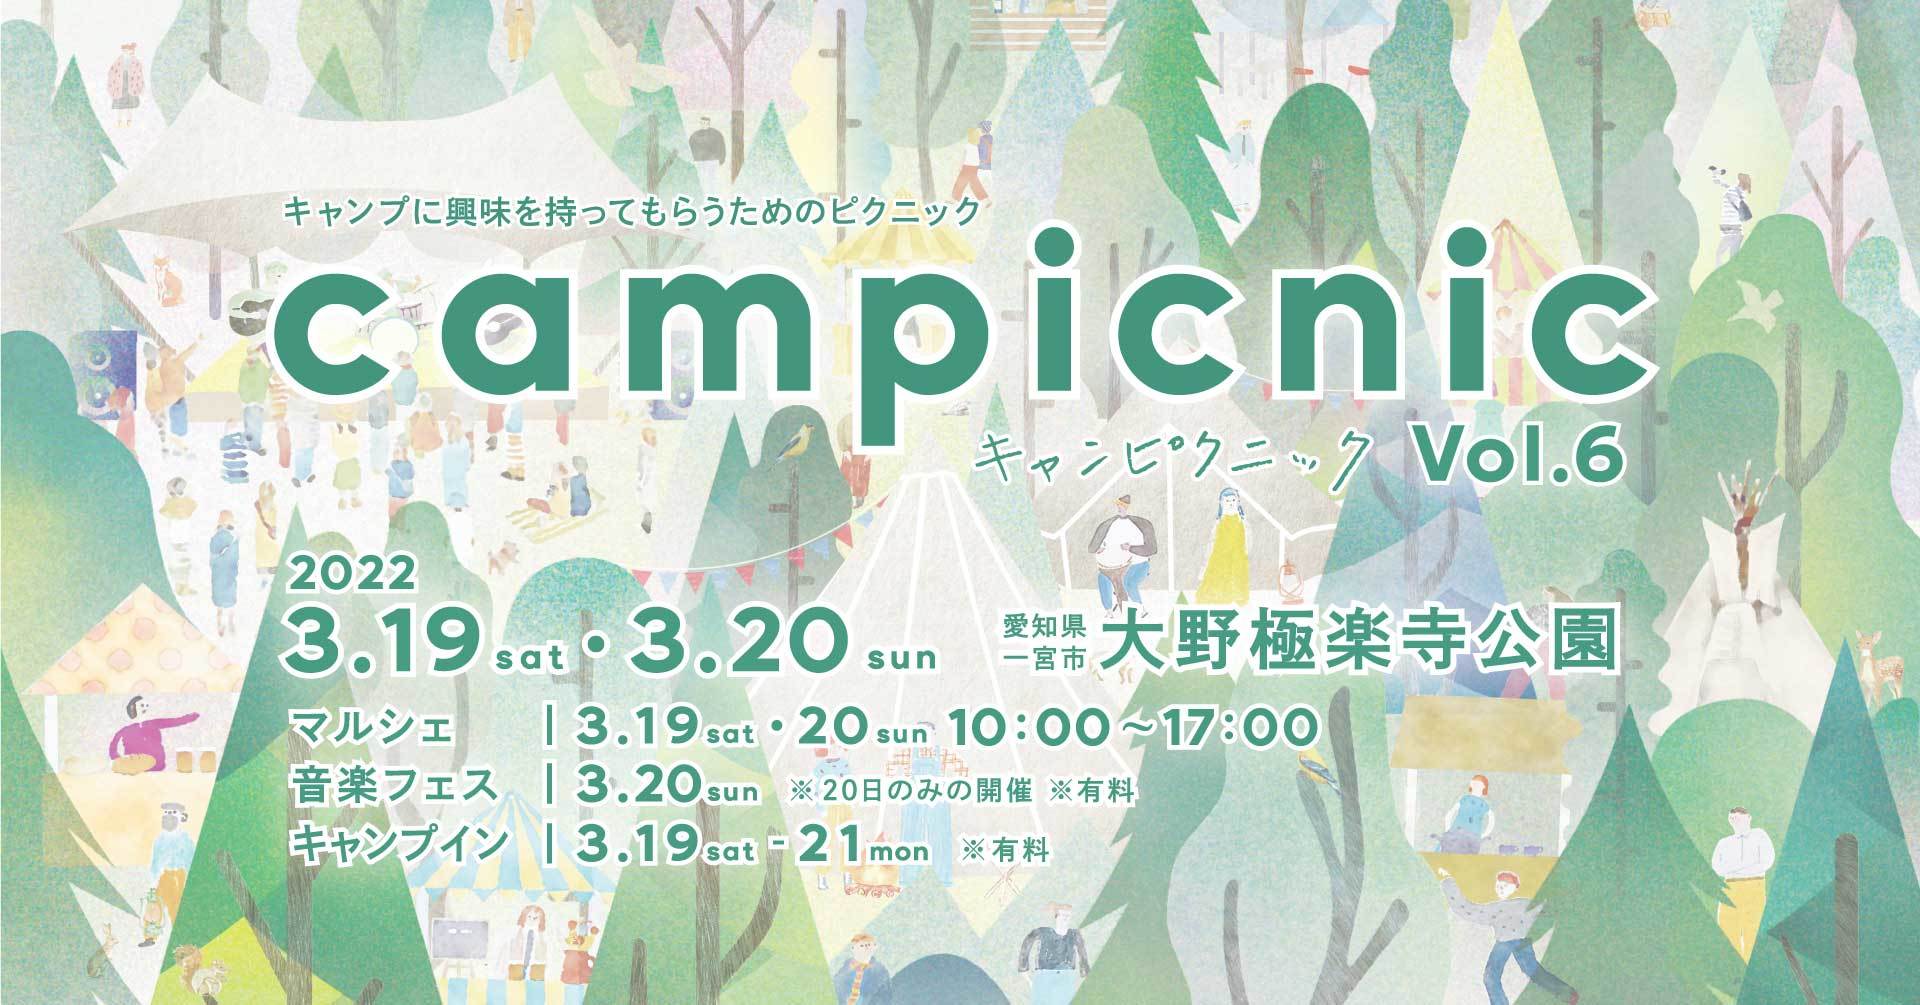 愛知県一宮市で初の音楽フェス！
マルシェと音楽が楽しめるキャンプイベント
「campicnic Vol.6」を3月19～20日に開催決定！